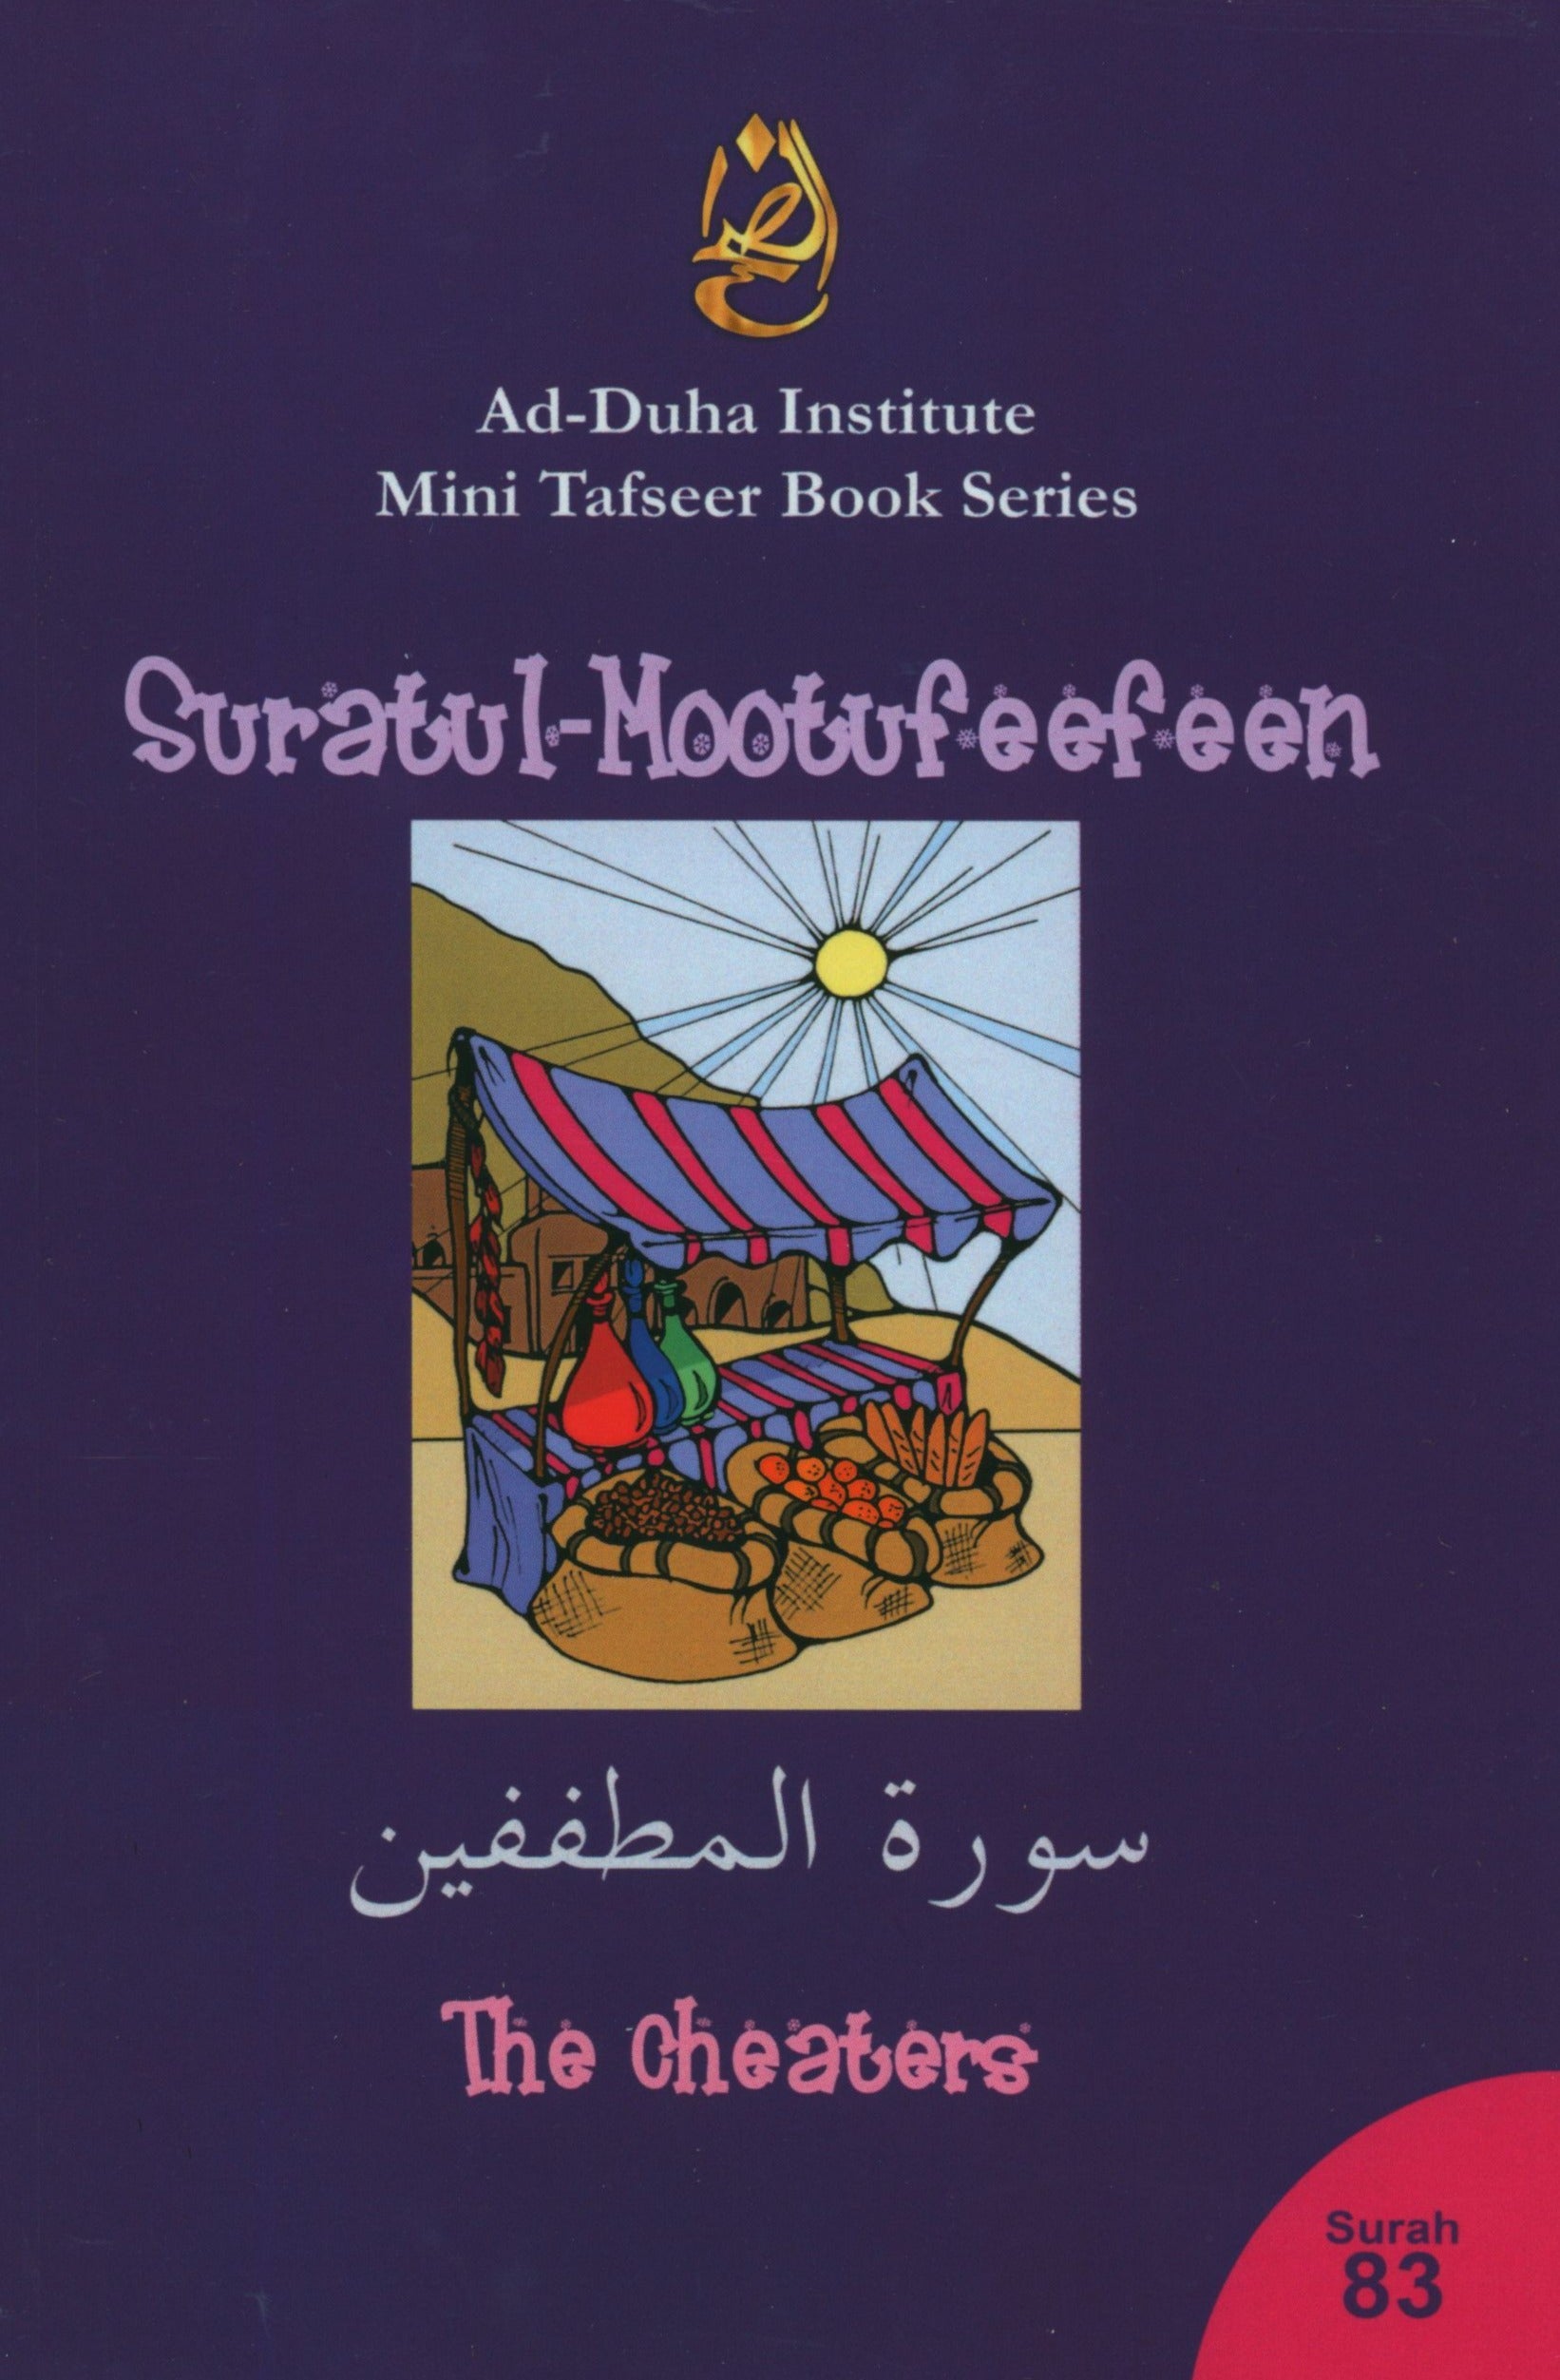 Mini Tafseer Book Suratul Mootufeefeen (Surah 83)